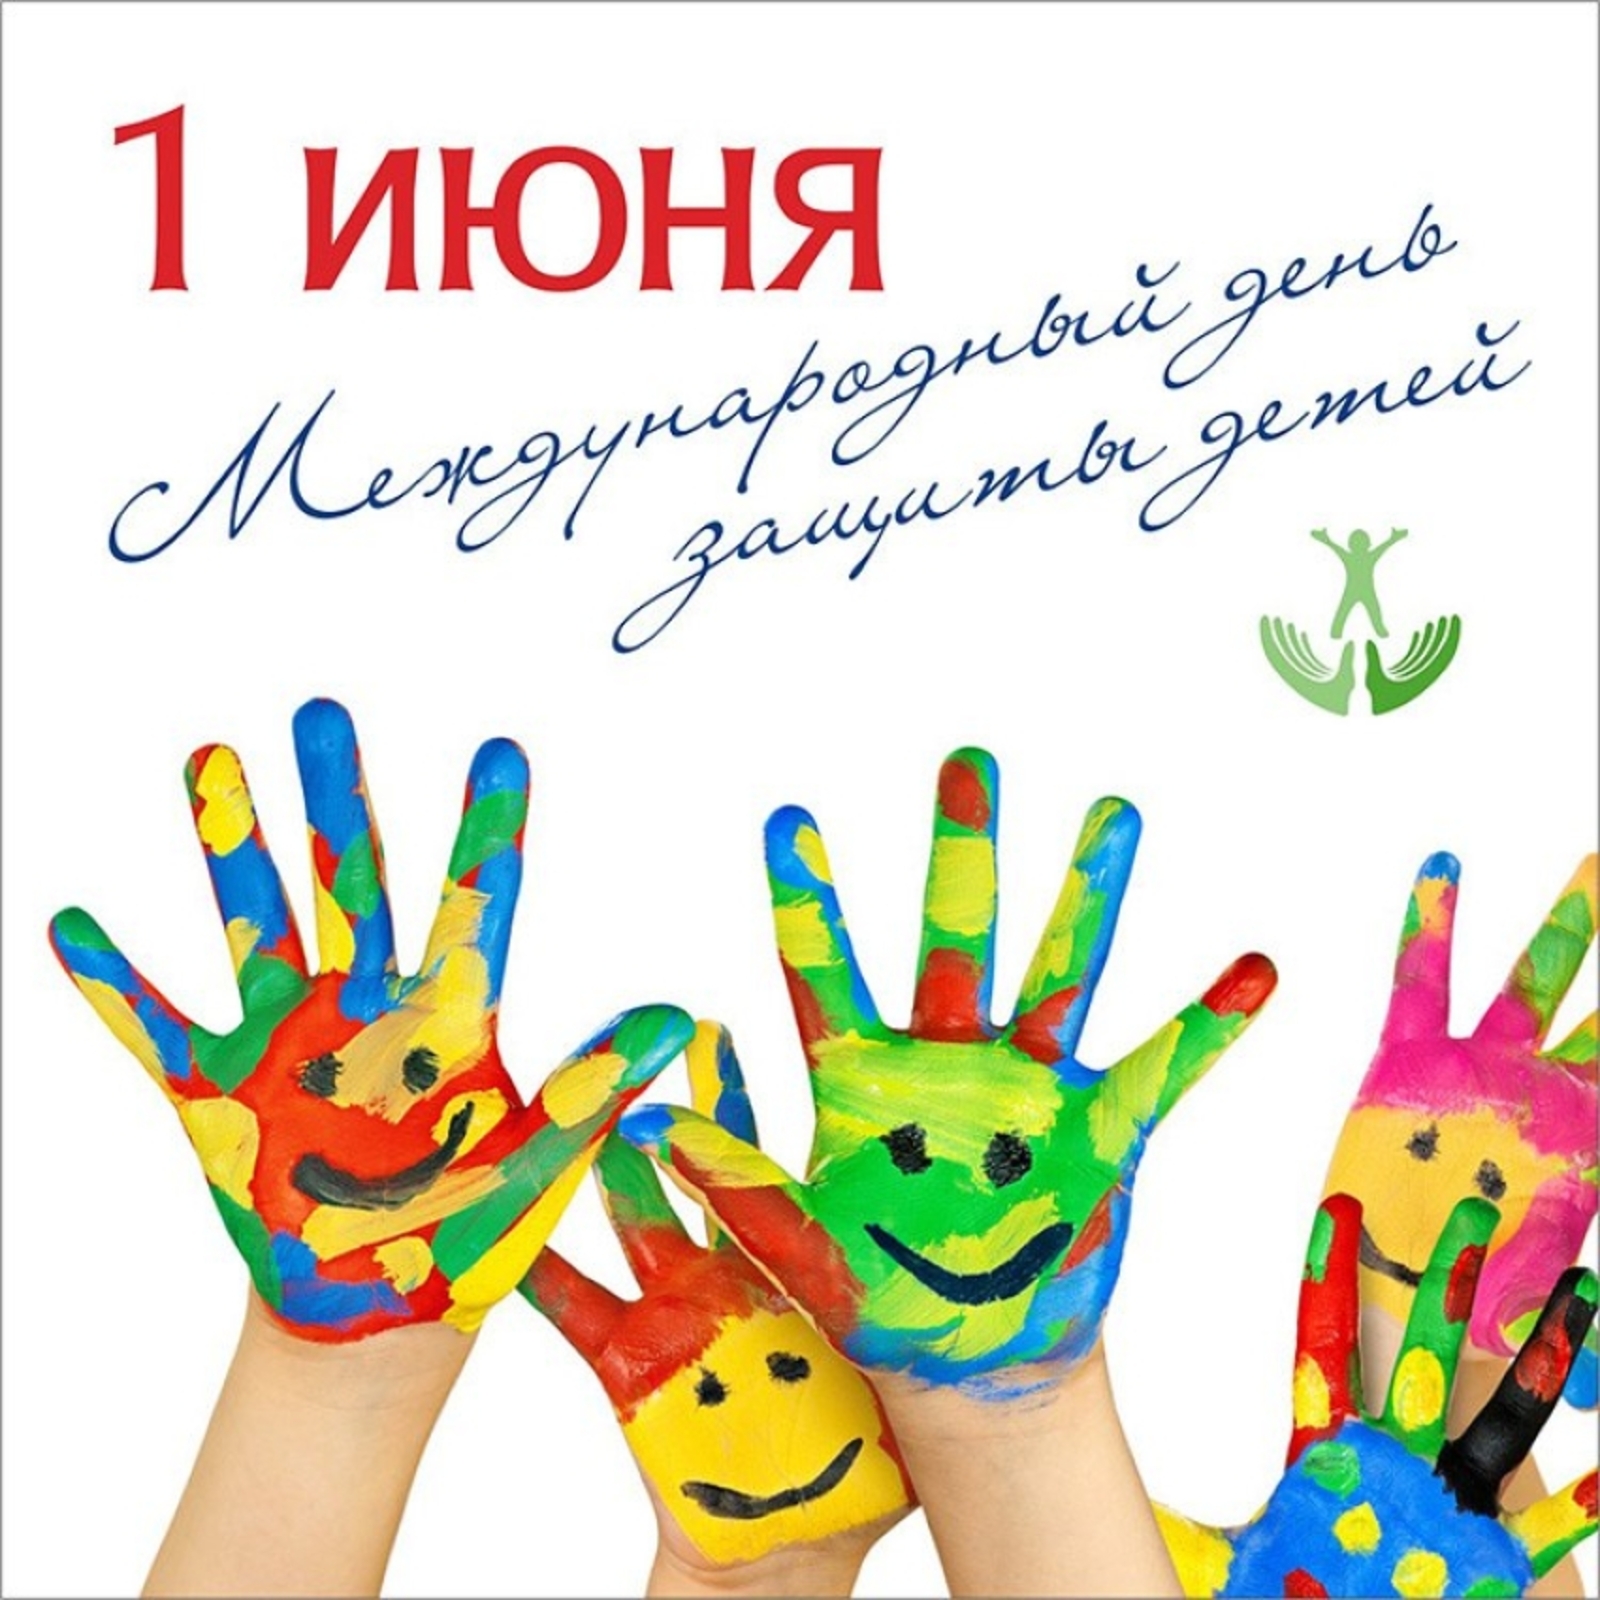 Сегодня во всем мире отмечается День защиты детей. В нашей стране поддержка семьи и детства — главный приоритет государства